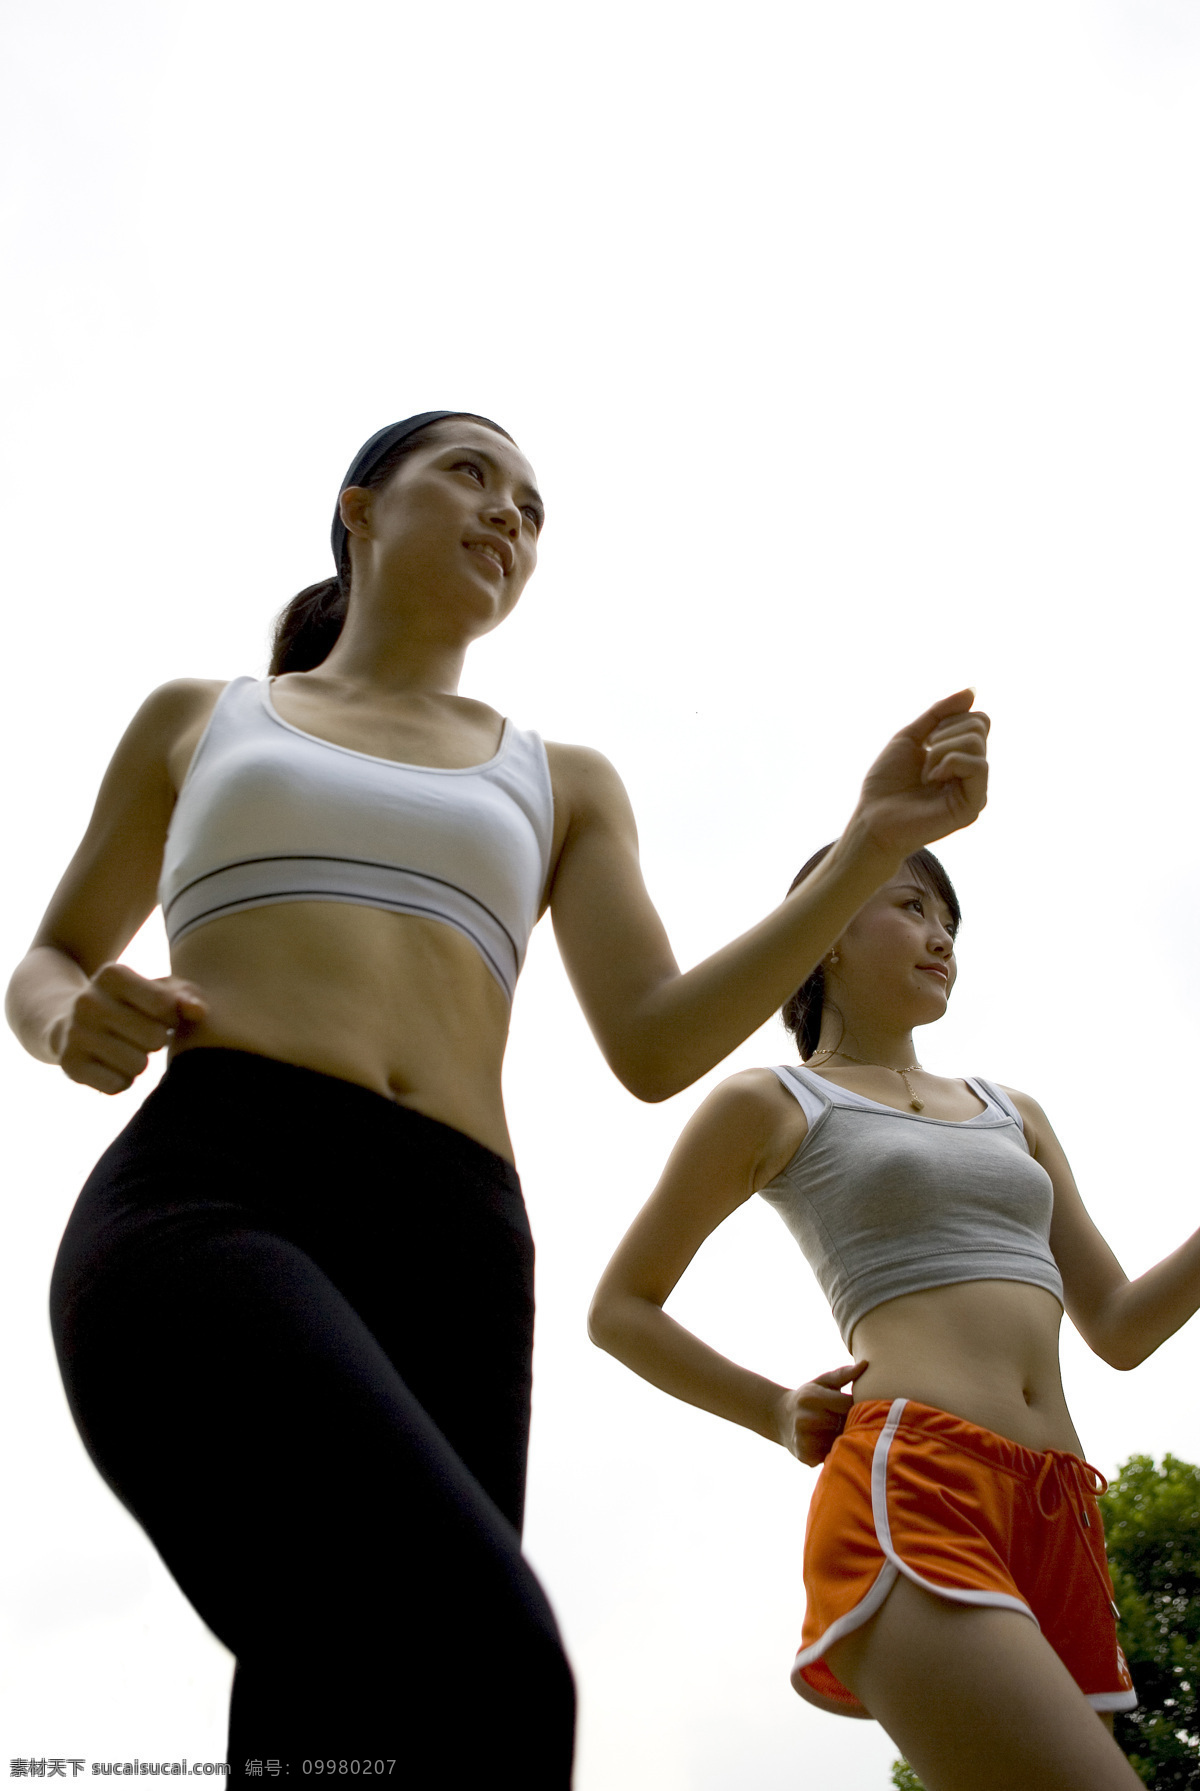 两个 健身 美女图片 户外健身 户外运动 女性 美女 性感美女 运动 跑步 户外 草地 运动员 生活人物 人物图片